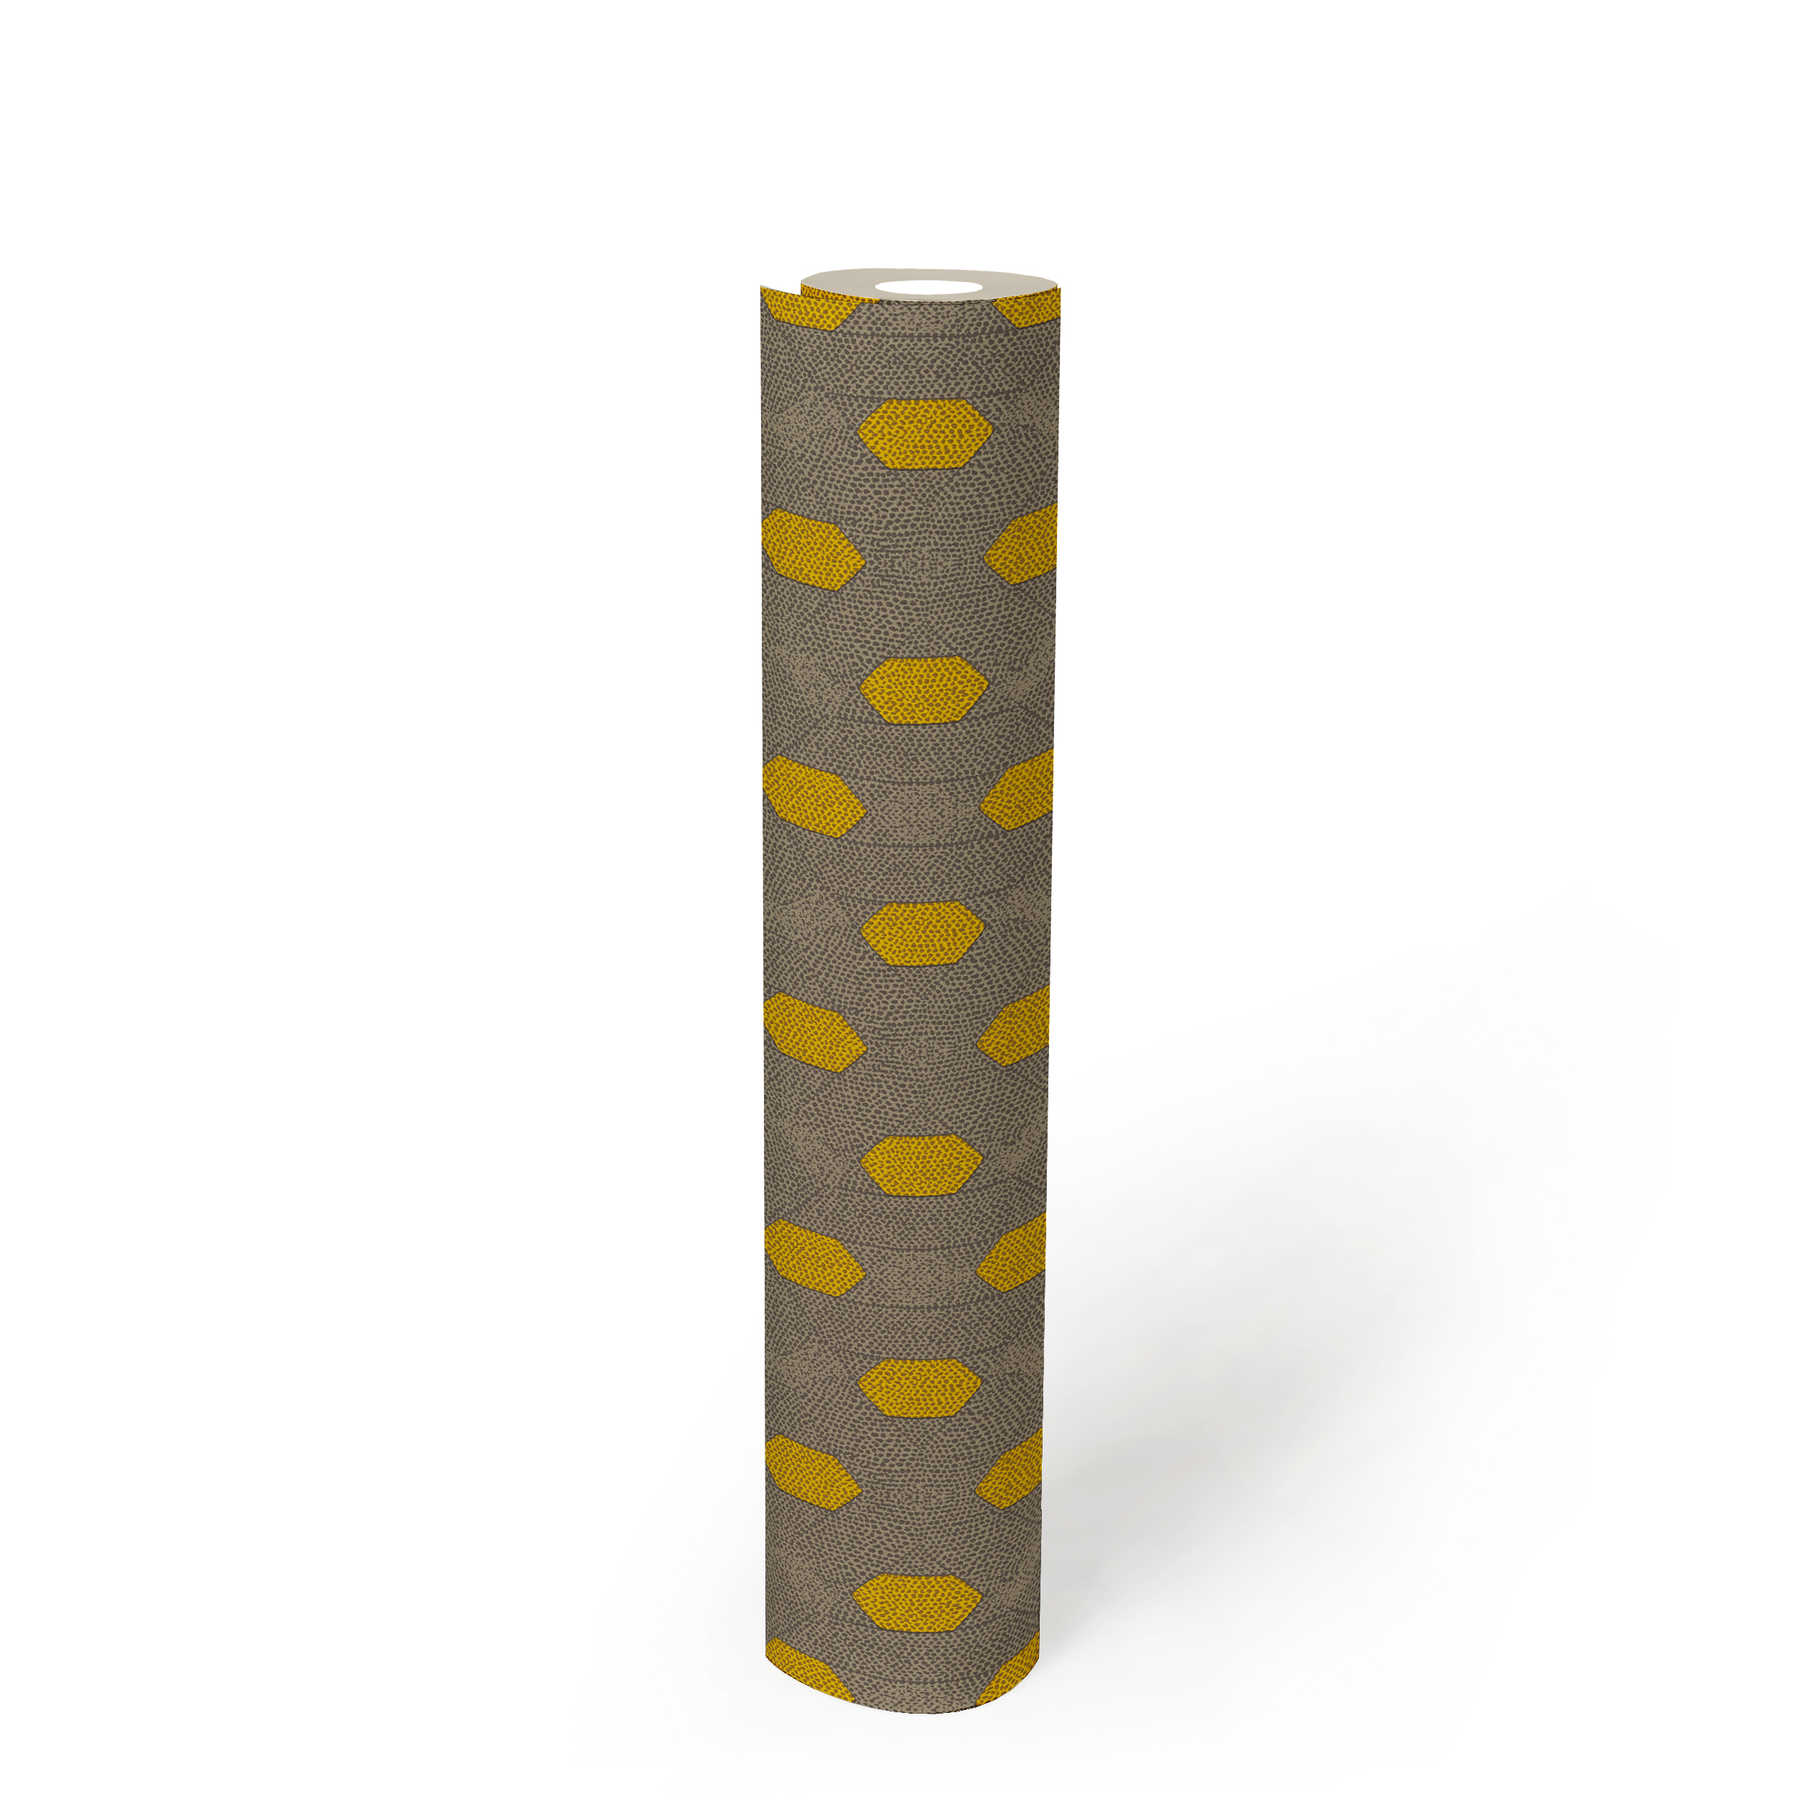             Vliesbehang met geometrisch stippenpatroon - geel, grijs, bruin
        